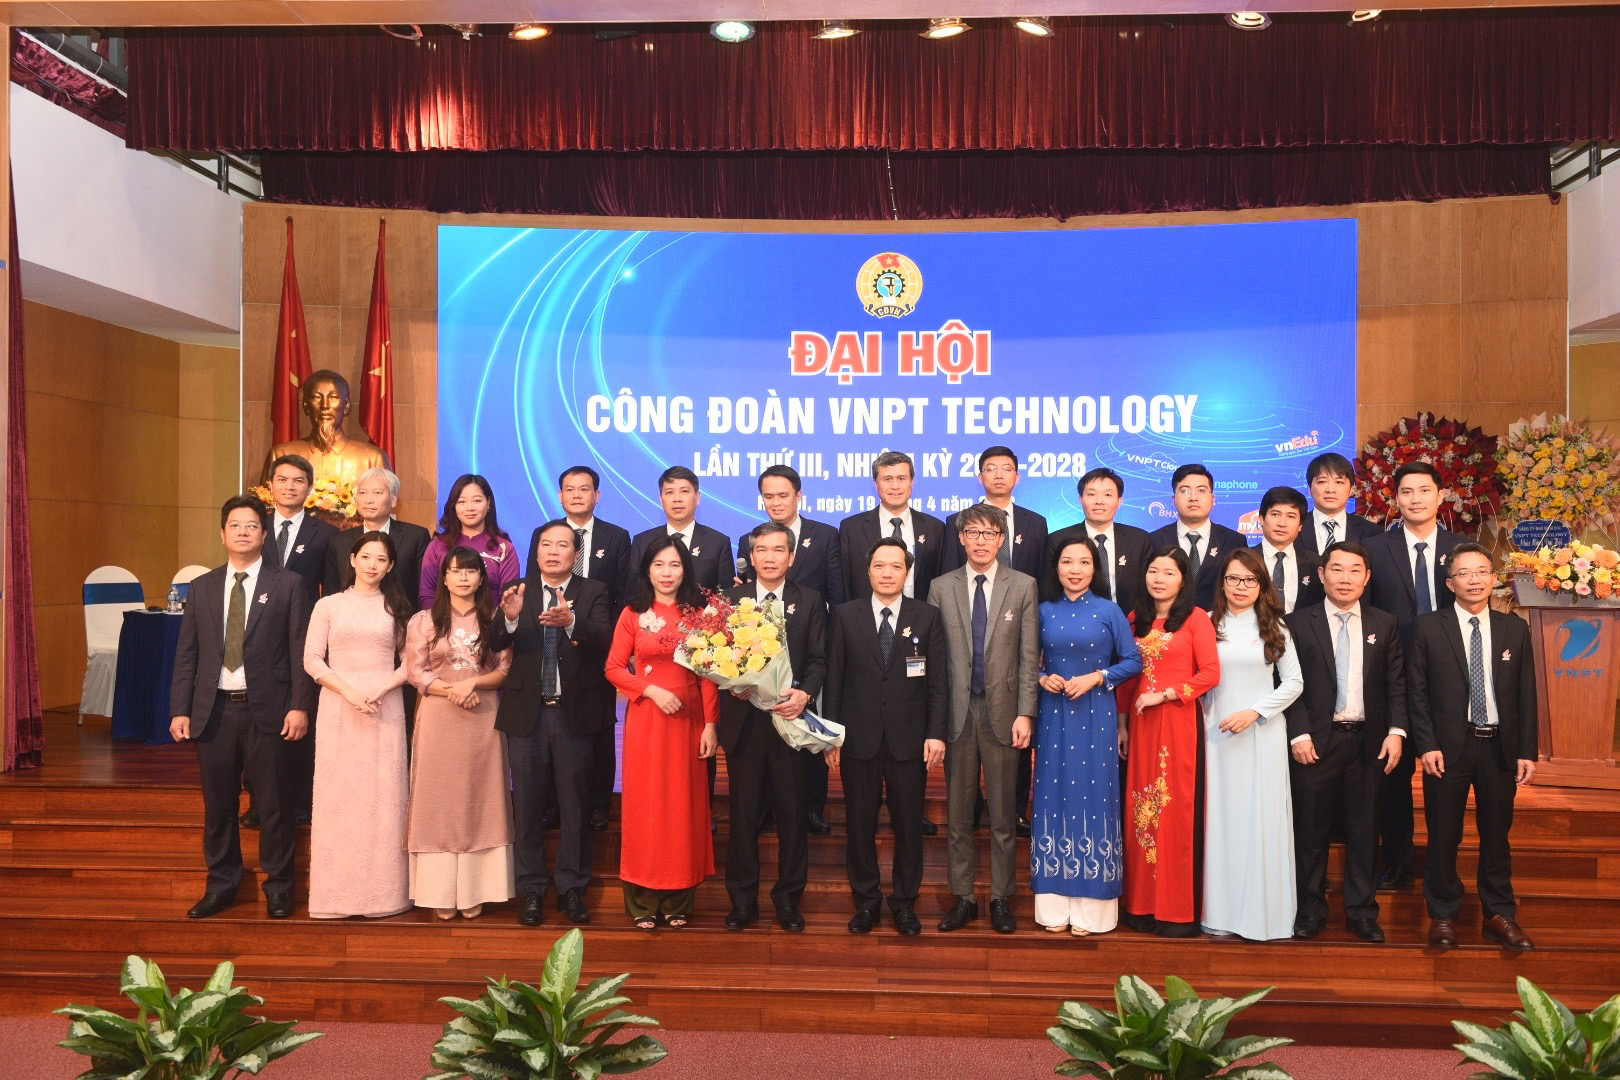 Đại hội Công đoàn VNPT Technology lần thứ III, nhiệm kỳ 2023 - 2028